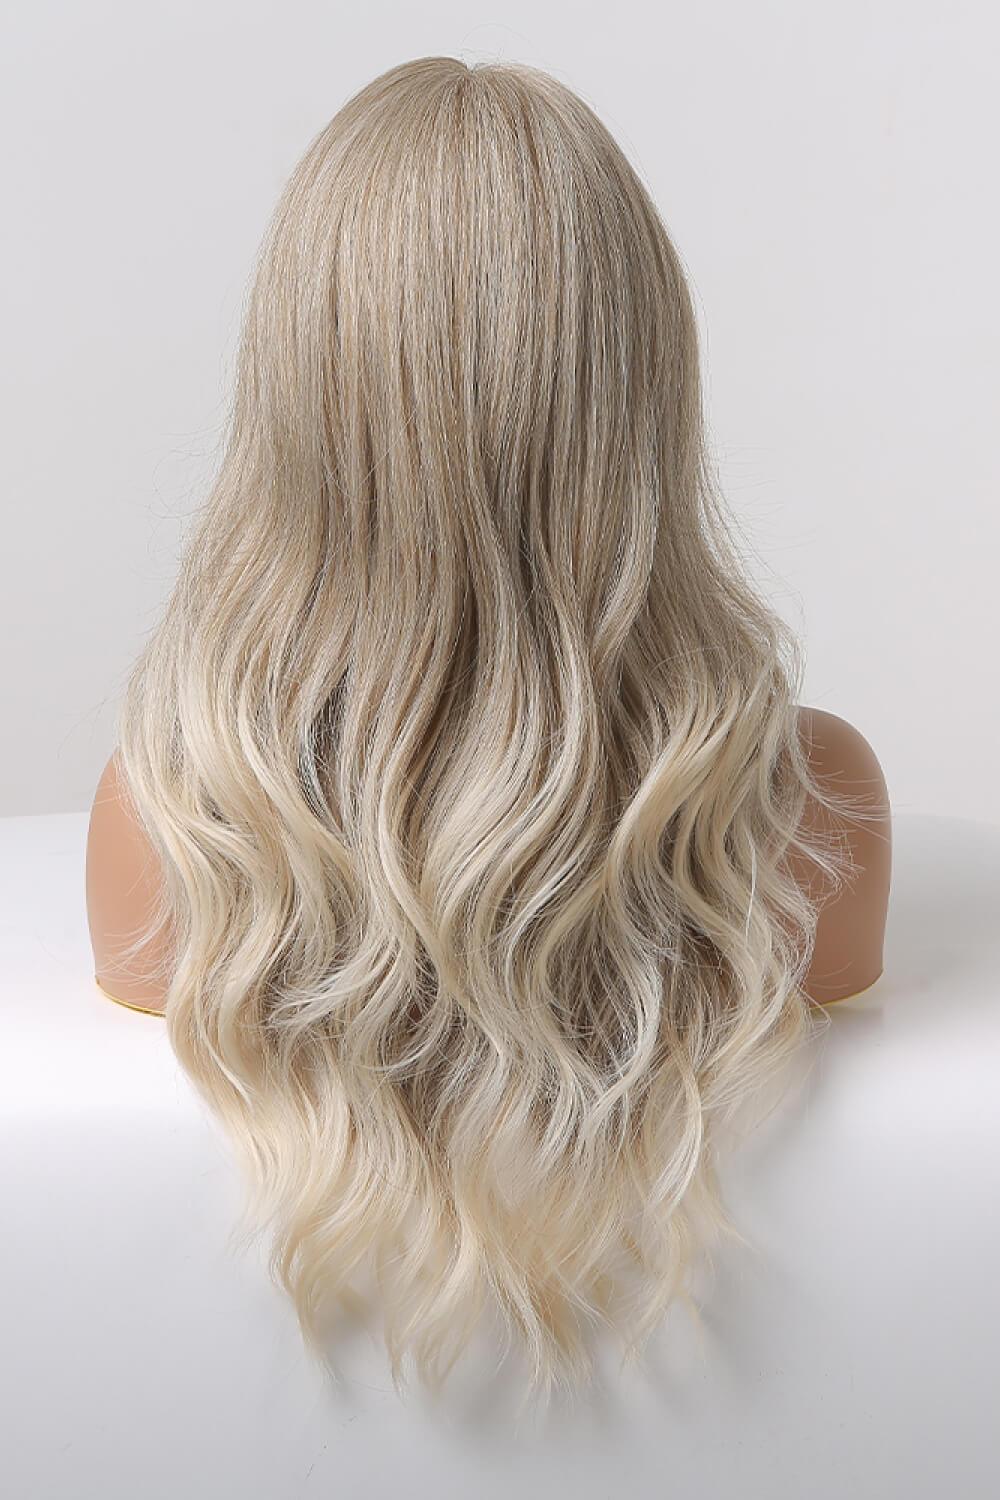 Hazel Blues® | 13*2" Lace Front Wigs Synthetic Long Wave 24" 150% Density in Medium Blonde Highlights - Hazel Blues®